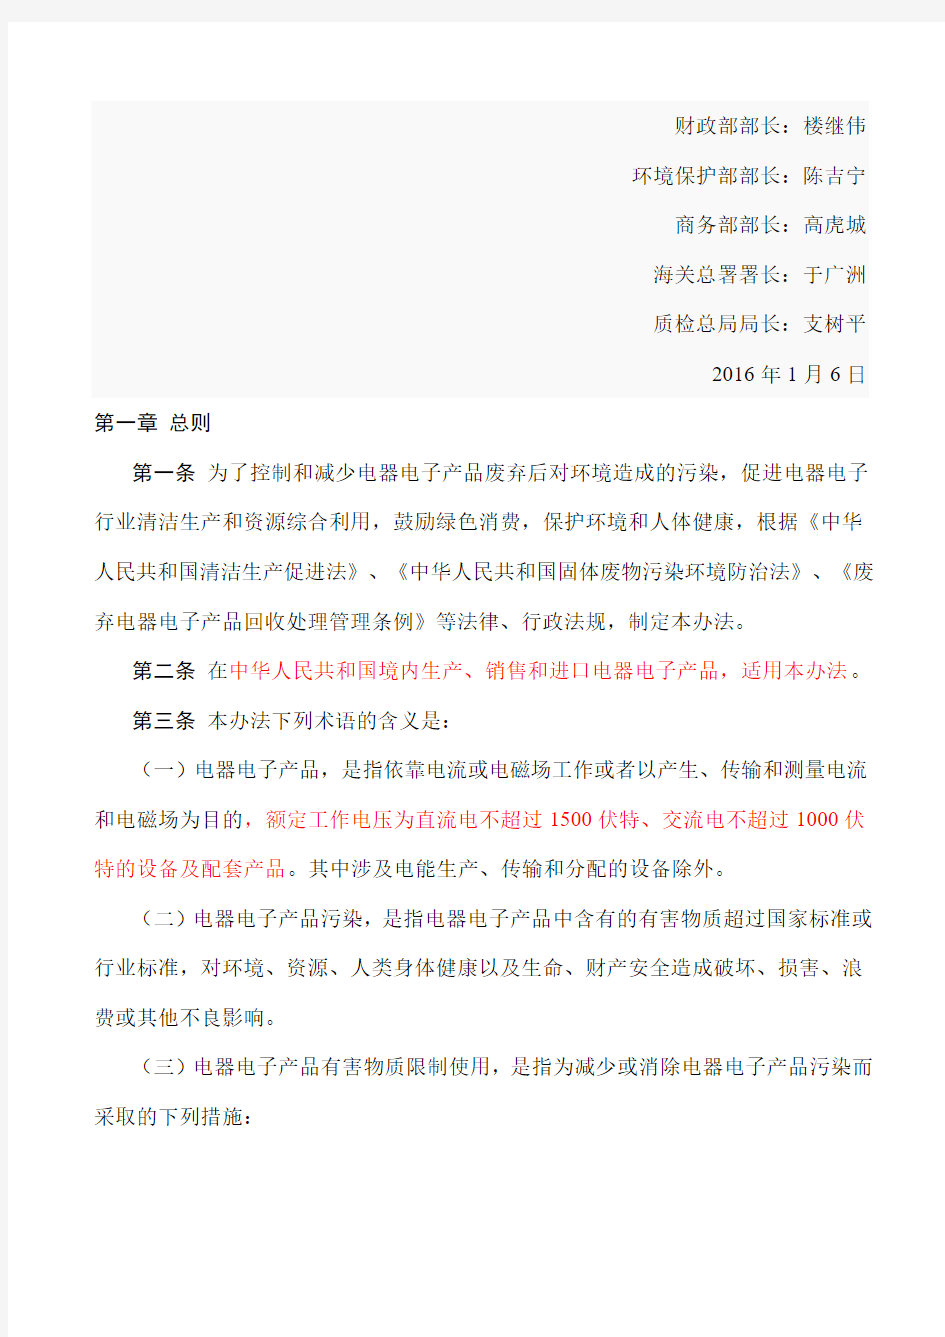 中国RoHS2.0 《电器电子产品有害物质限制使用管理办法》